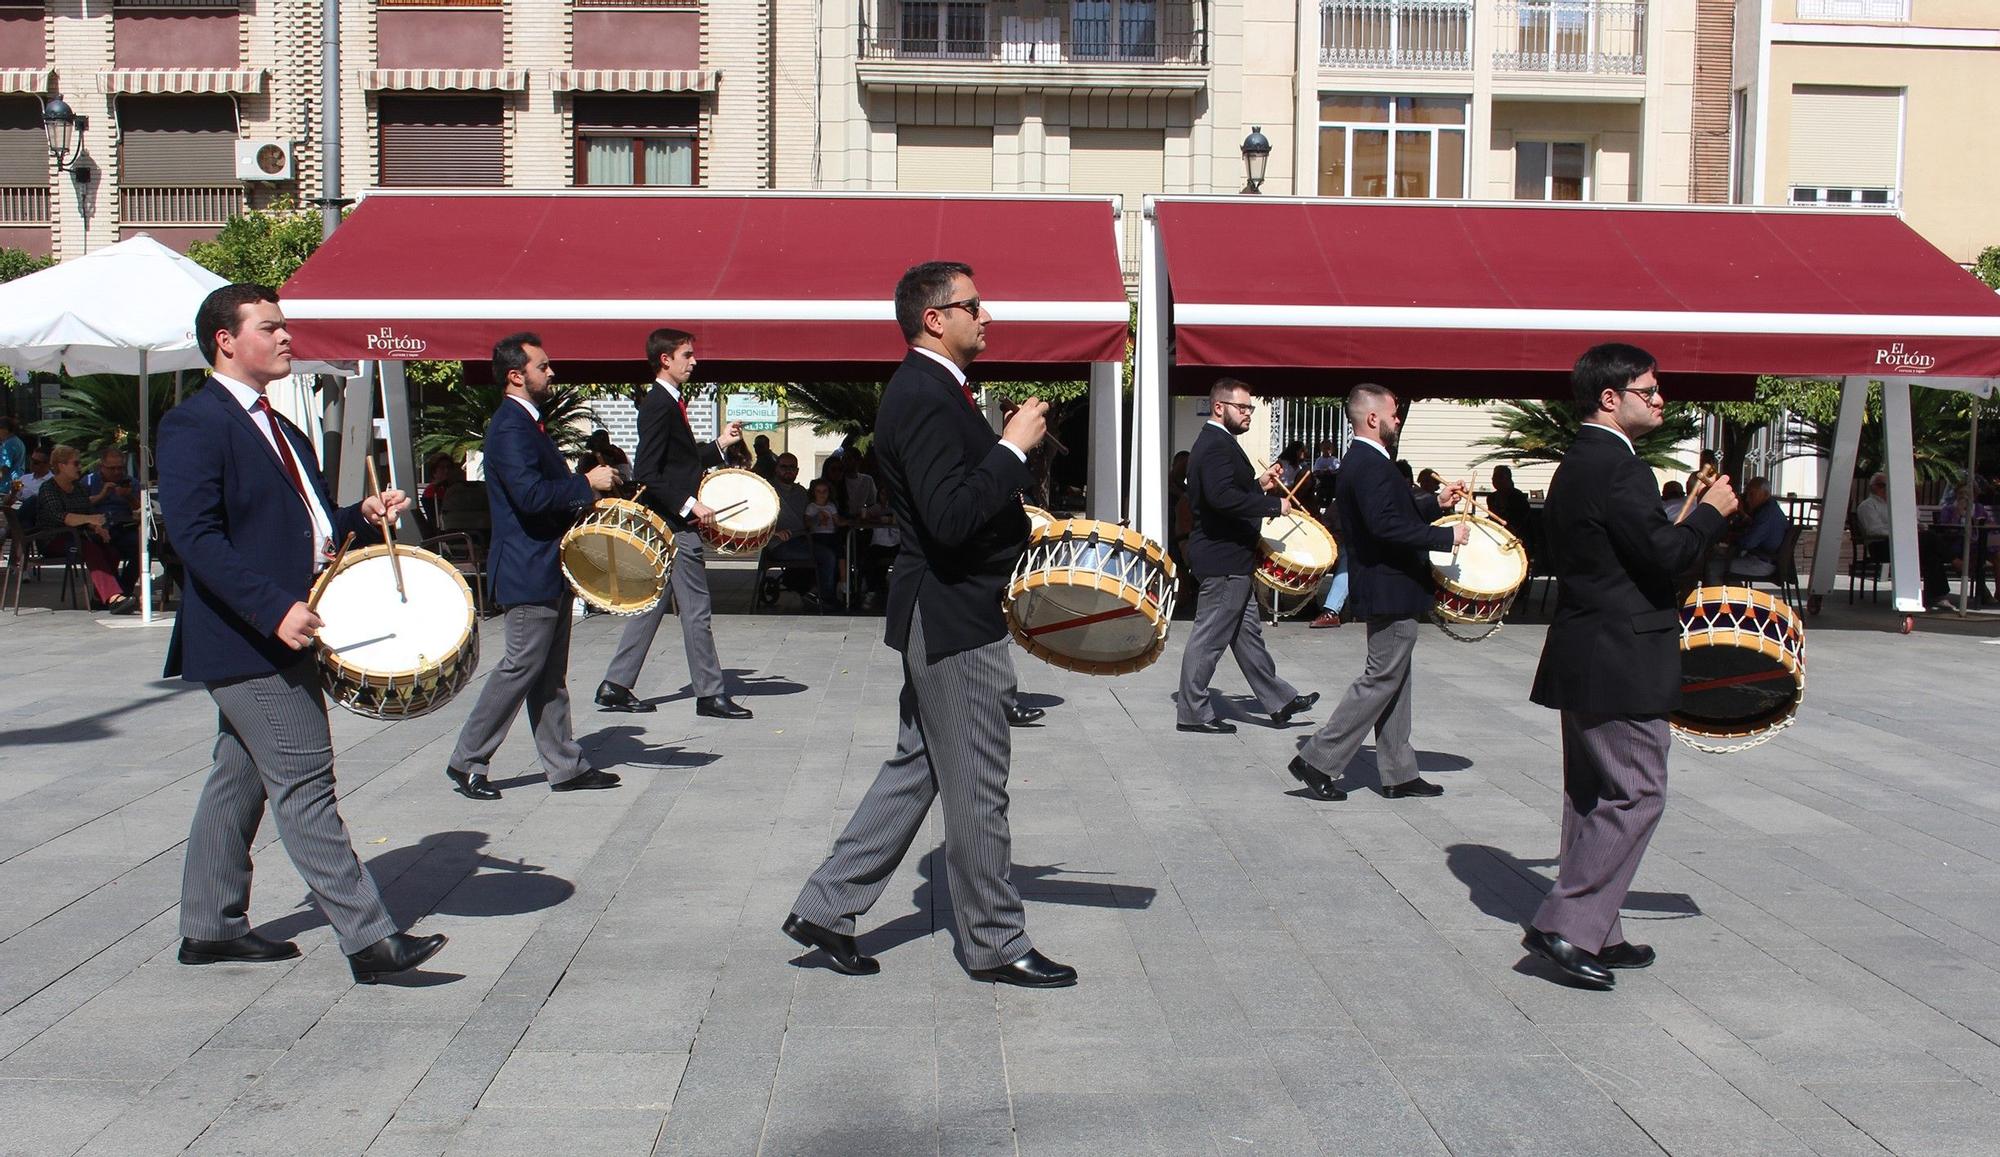 50 tambores de la zona sur de Córdoba protagonizan un desfile en Lucena